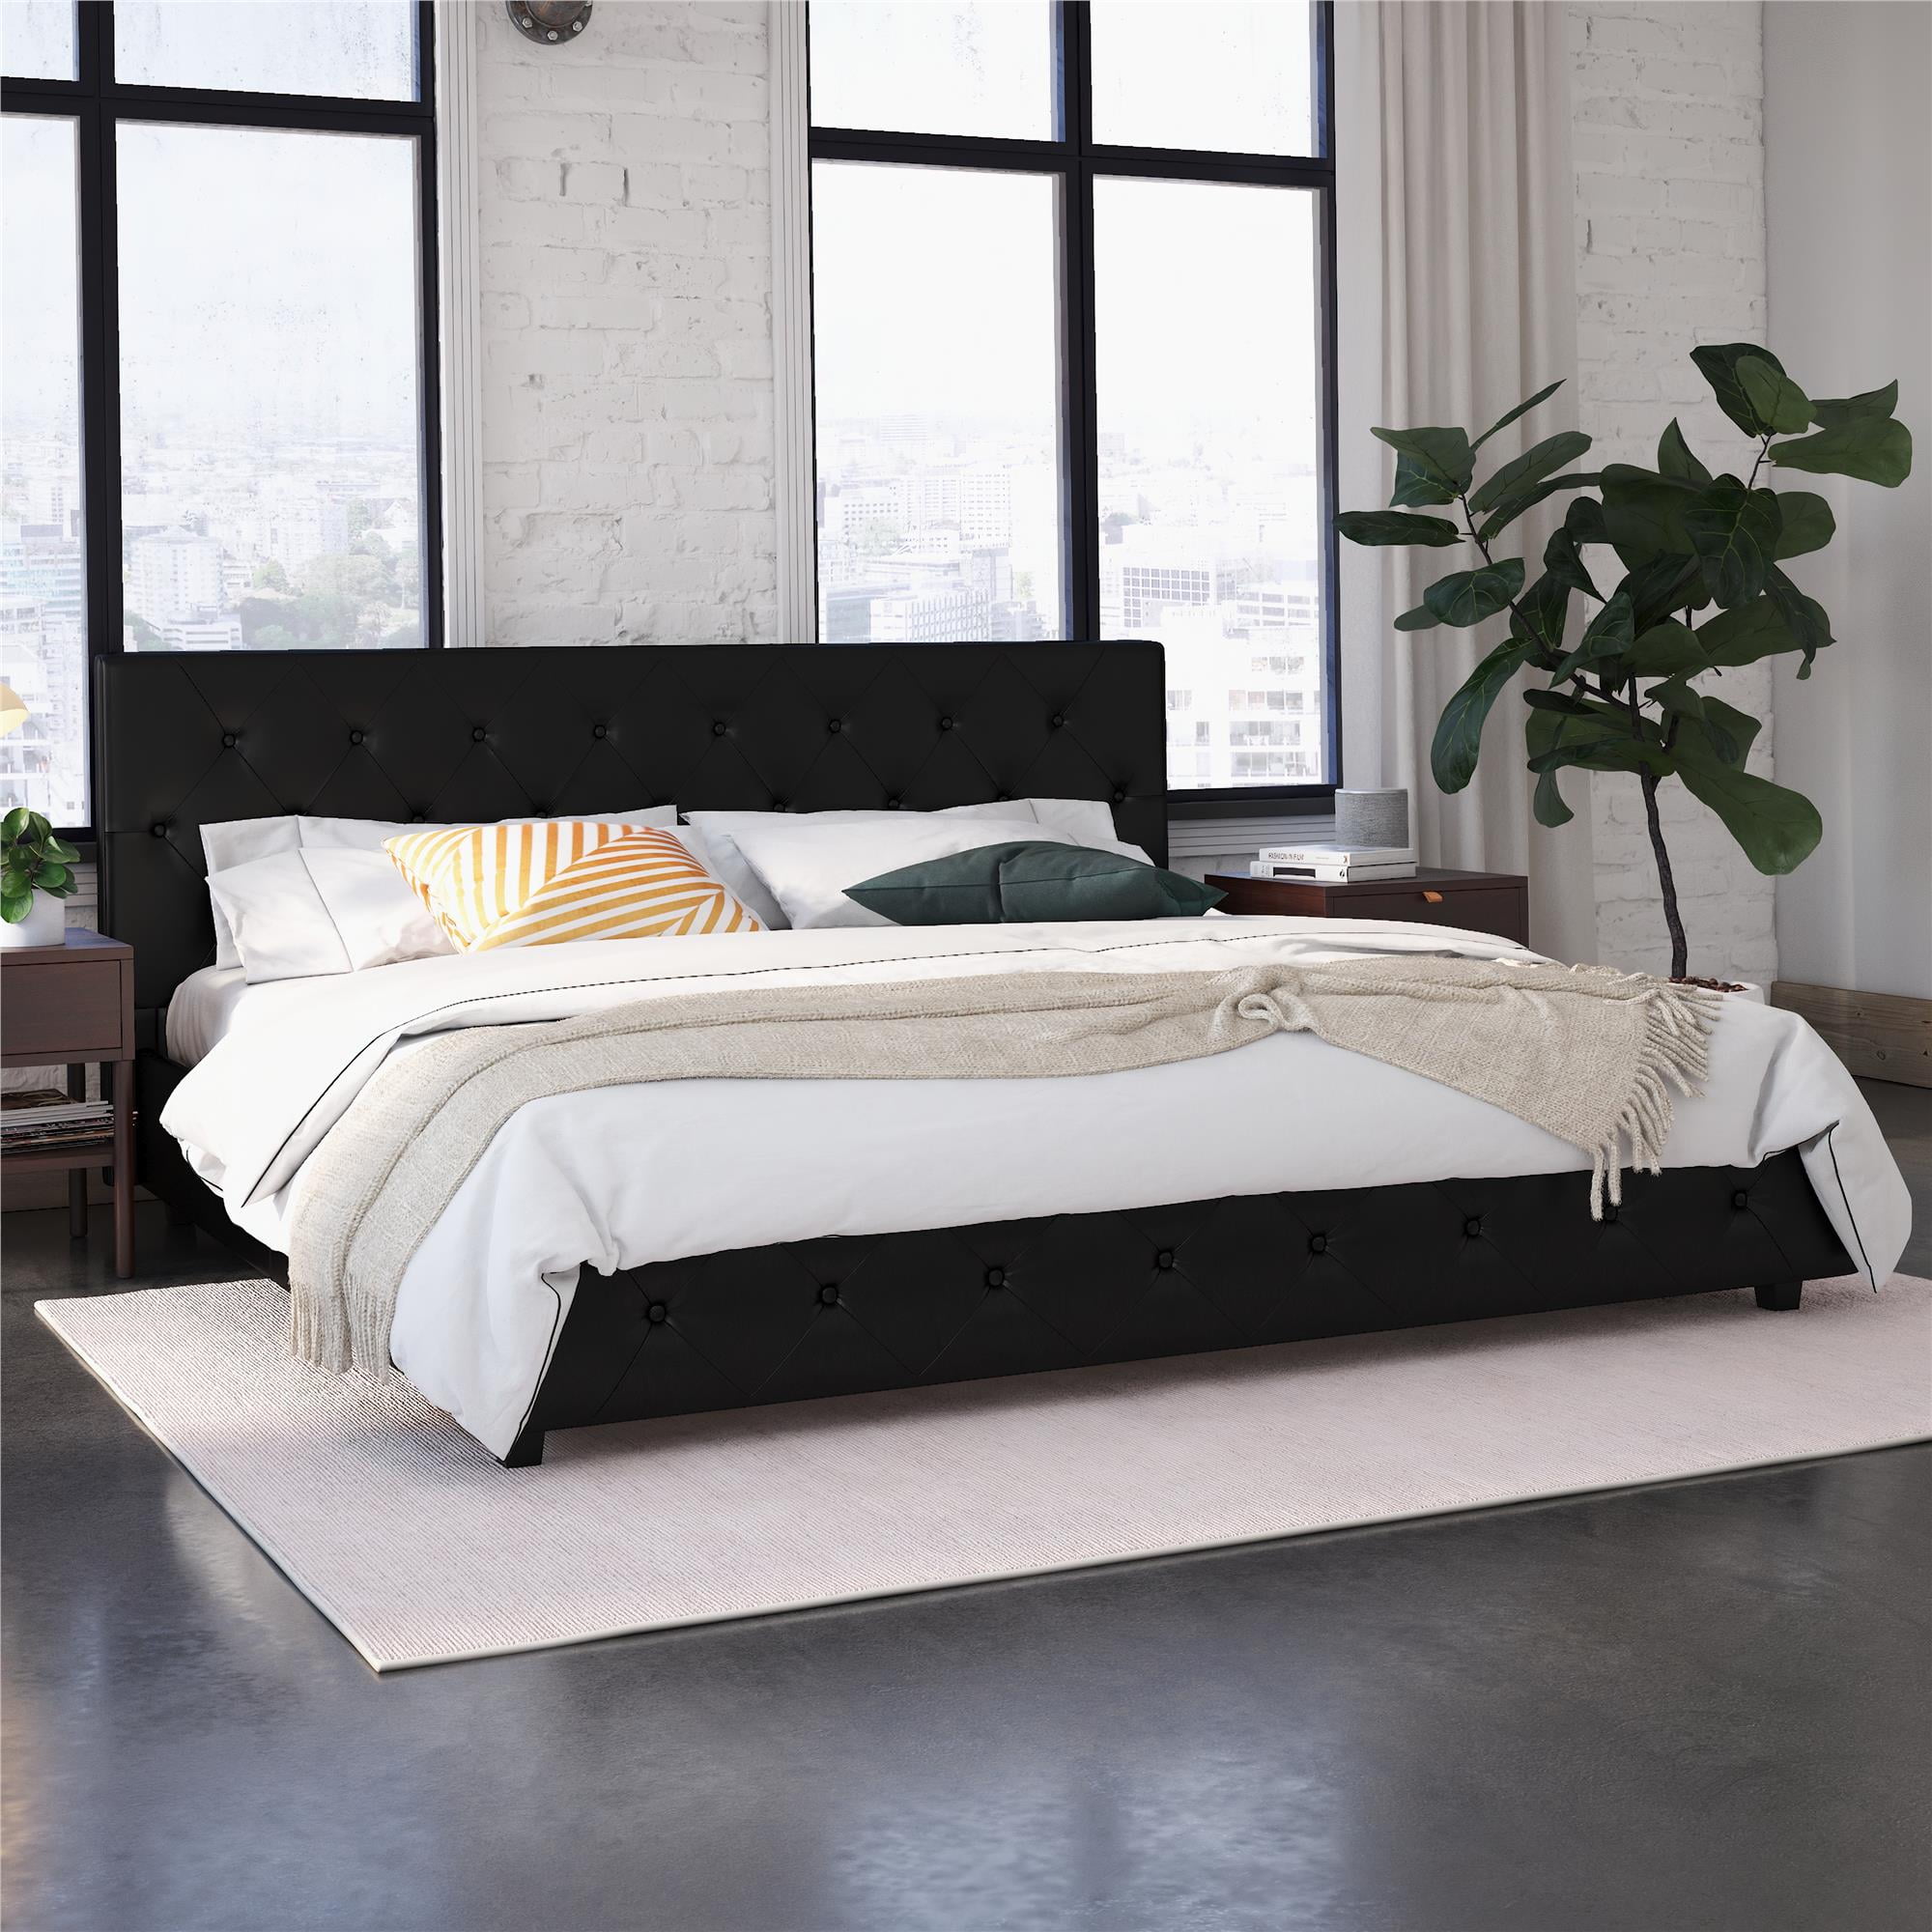 Dhp Dakota Tufted Upholstered Platform Bed Frame King Black Faux